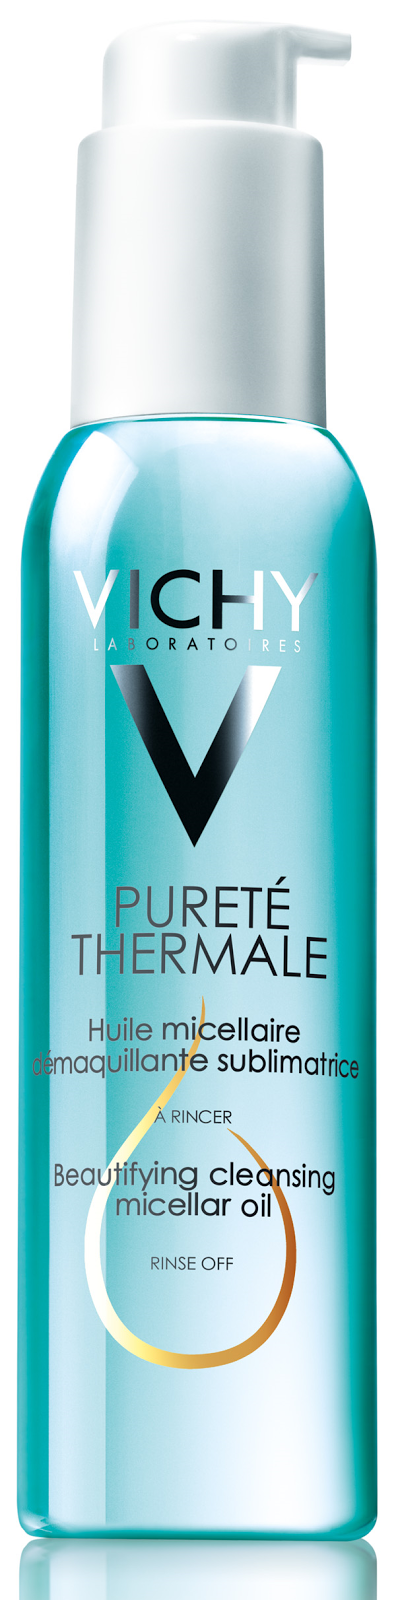 Vichy, Linea Pureté Thermale - Preview